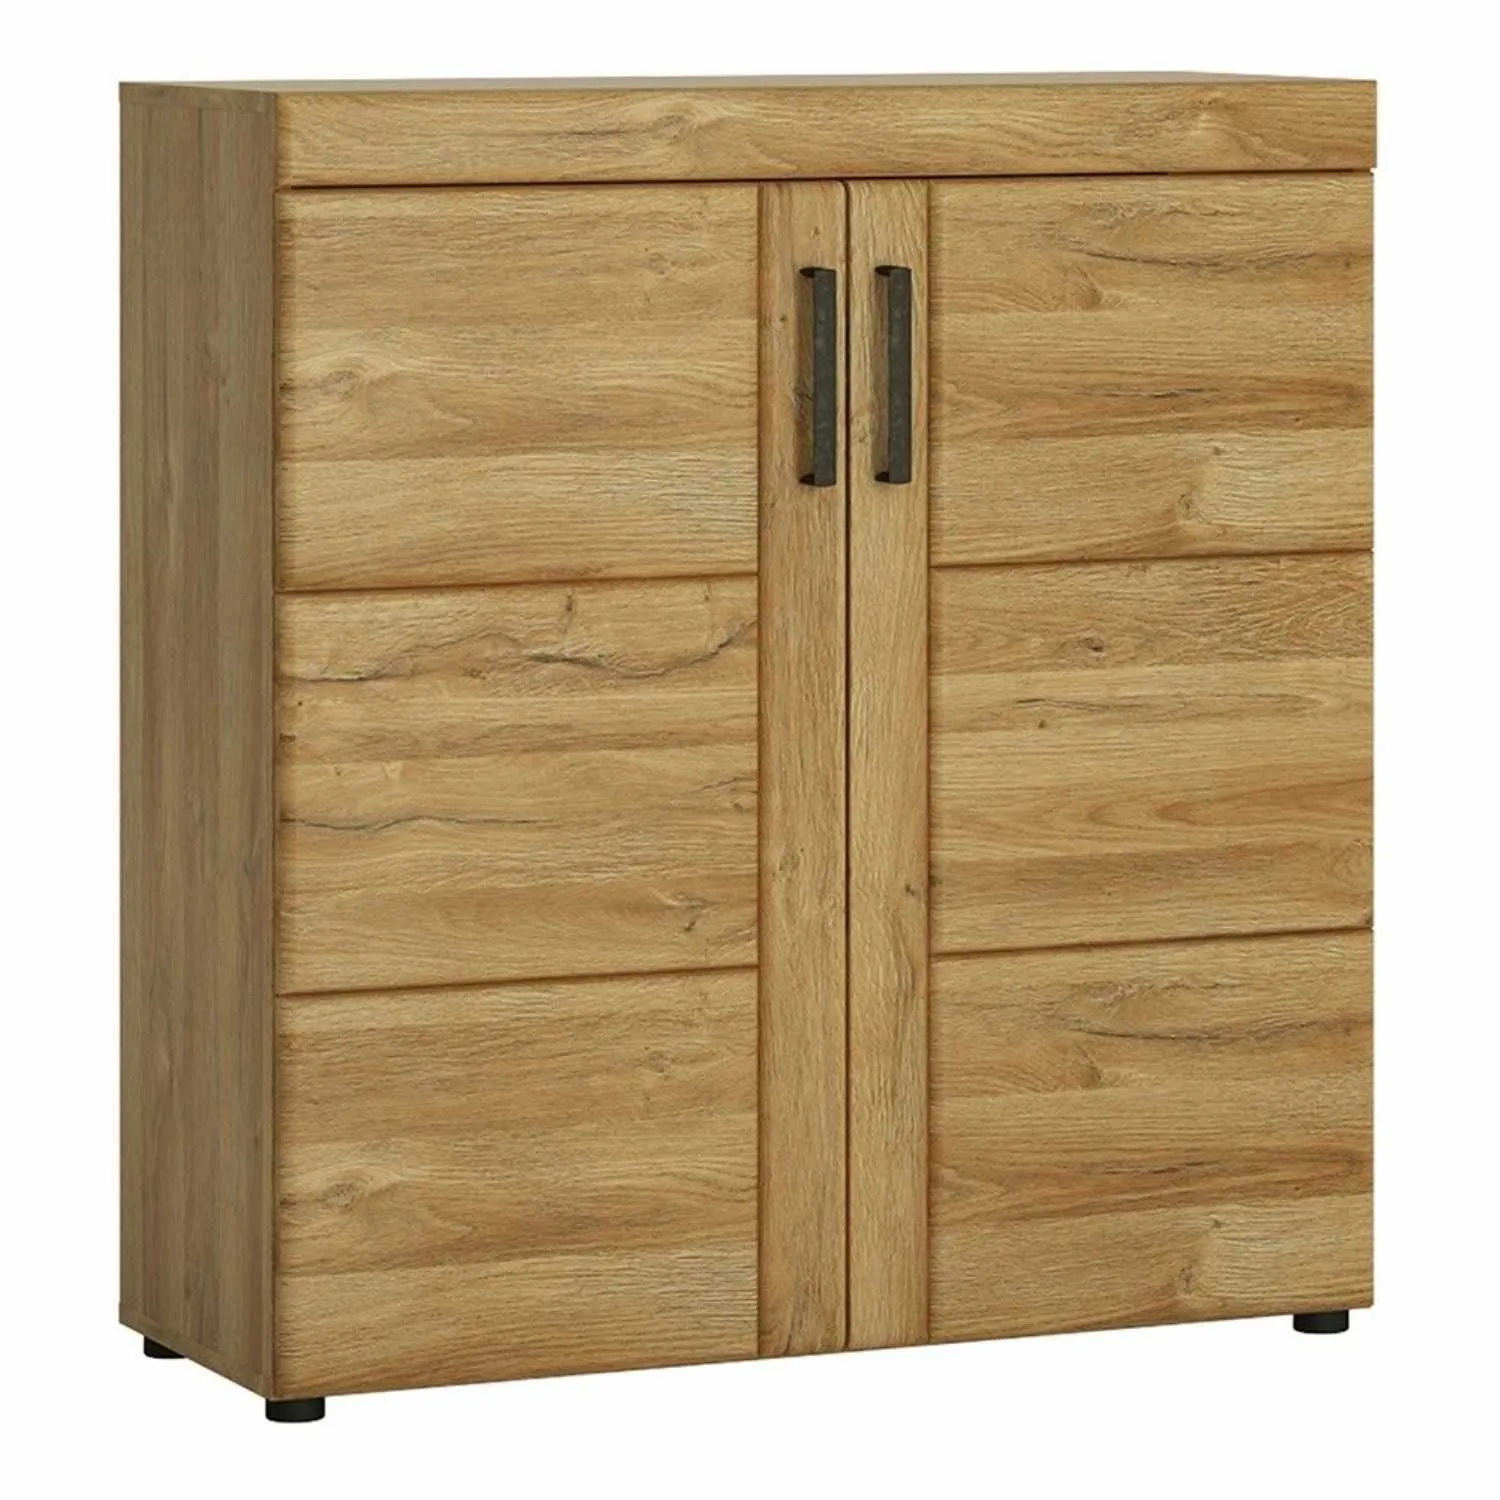 2 Door Shoe Cabinet Cupboard in Medium Oak Finish With 5 Shelves